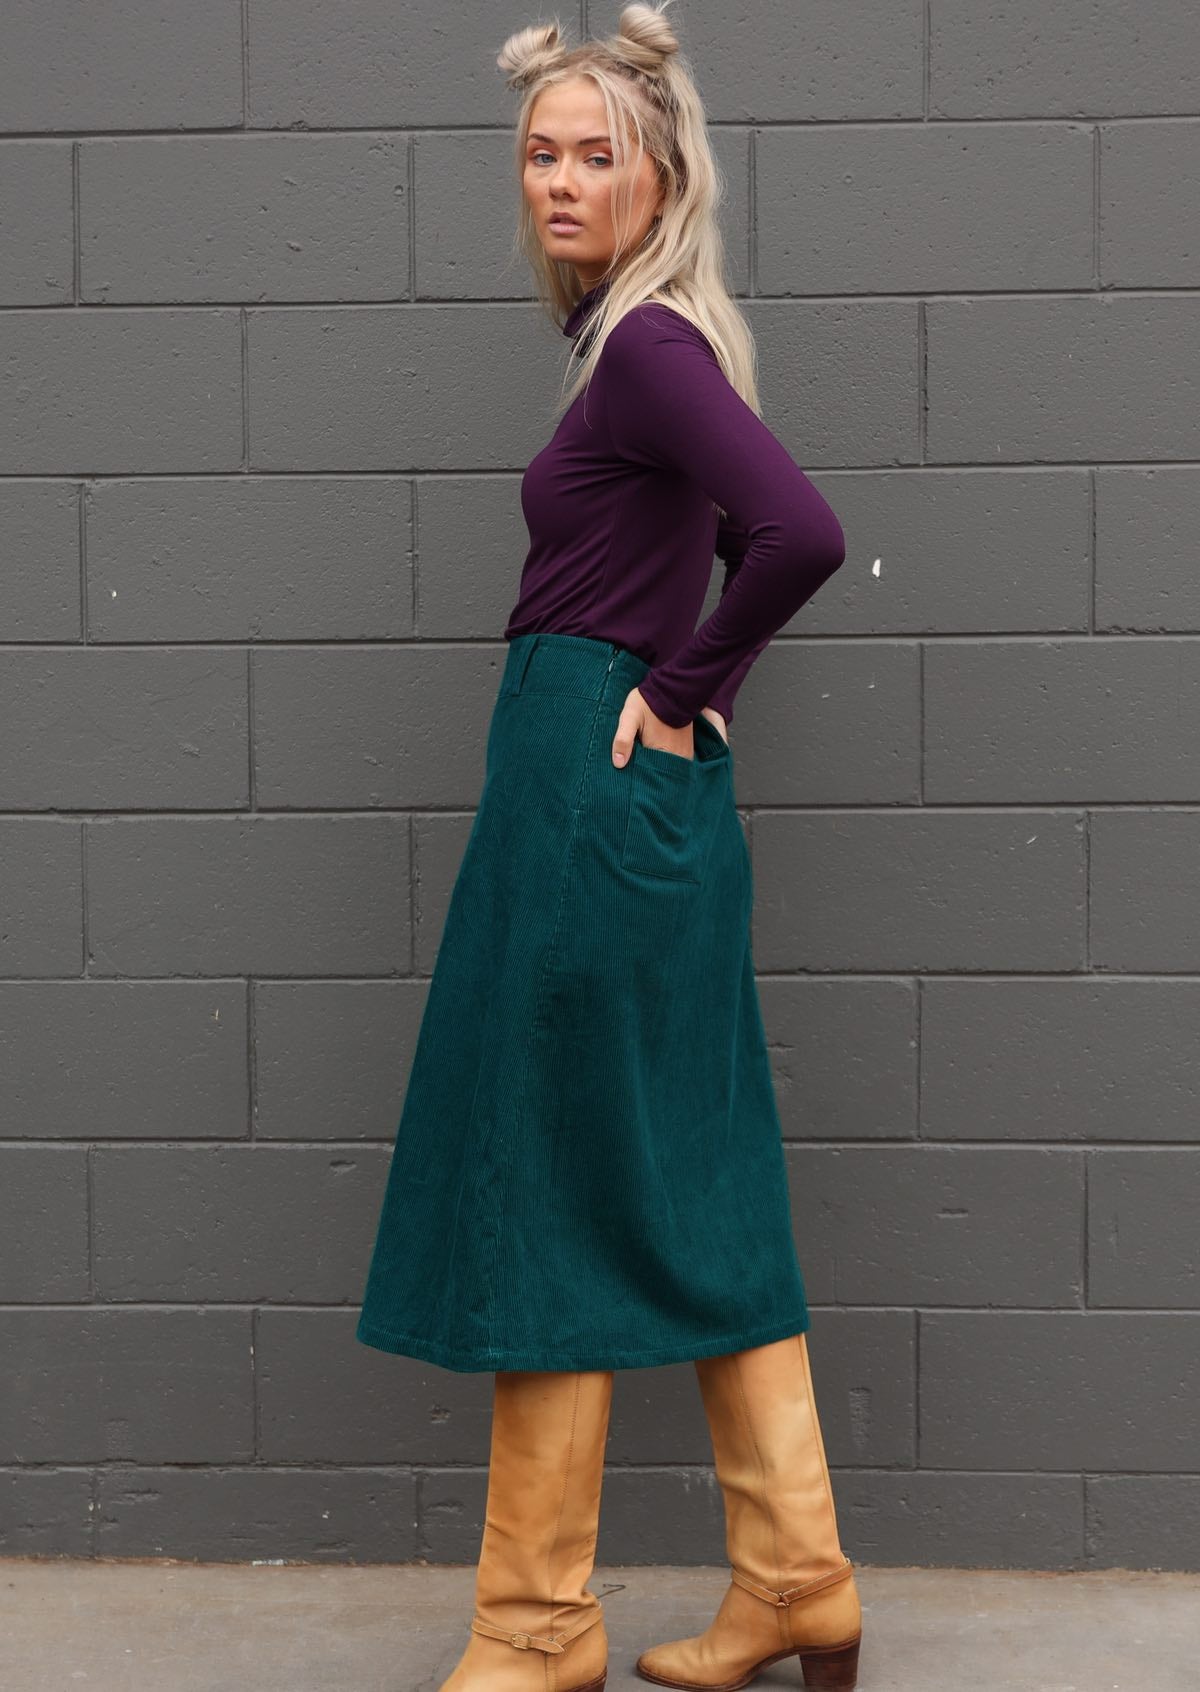 Cotton corduroy deep teal shin length skirt with back pockets